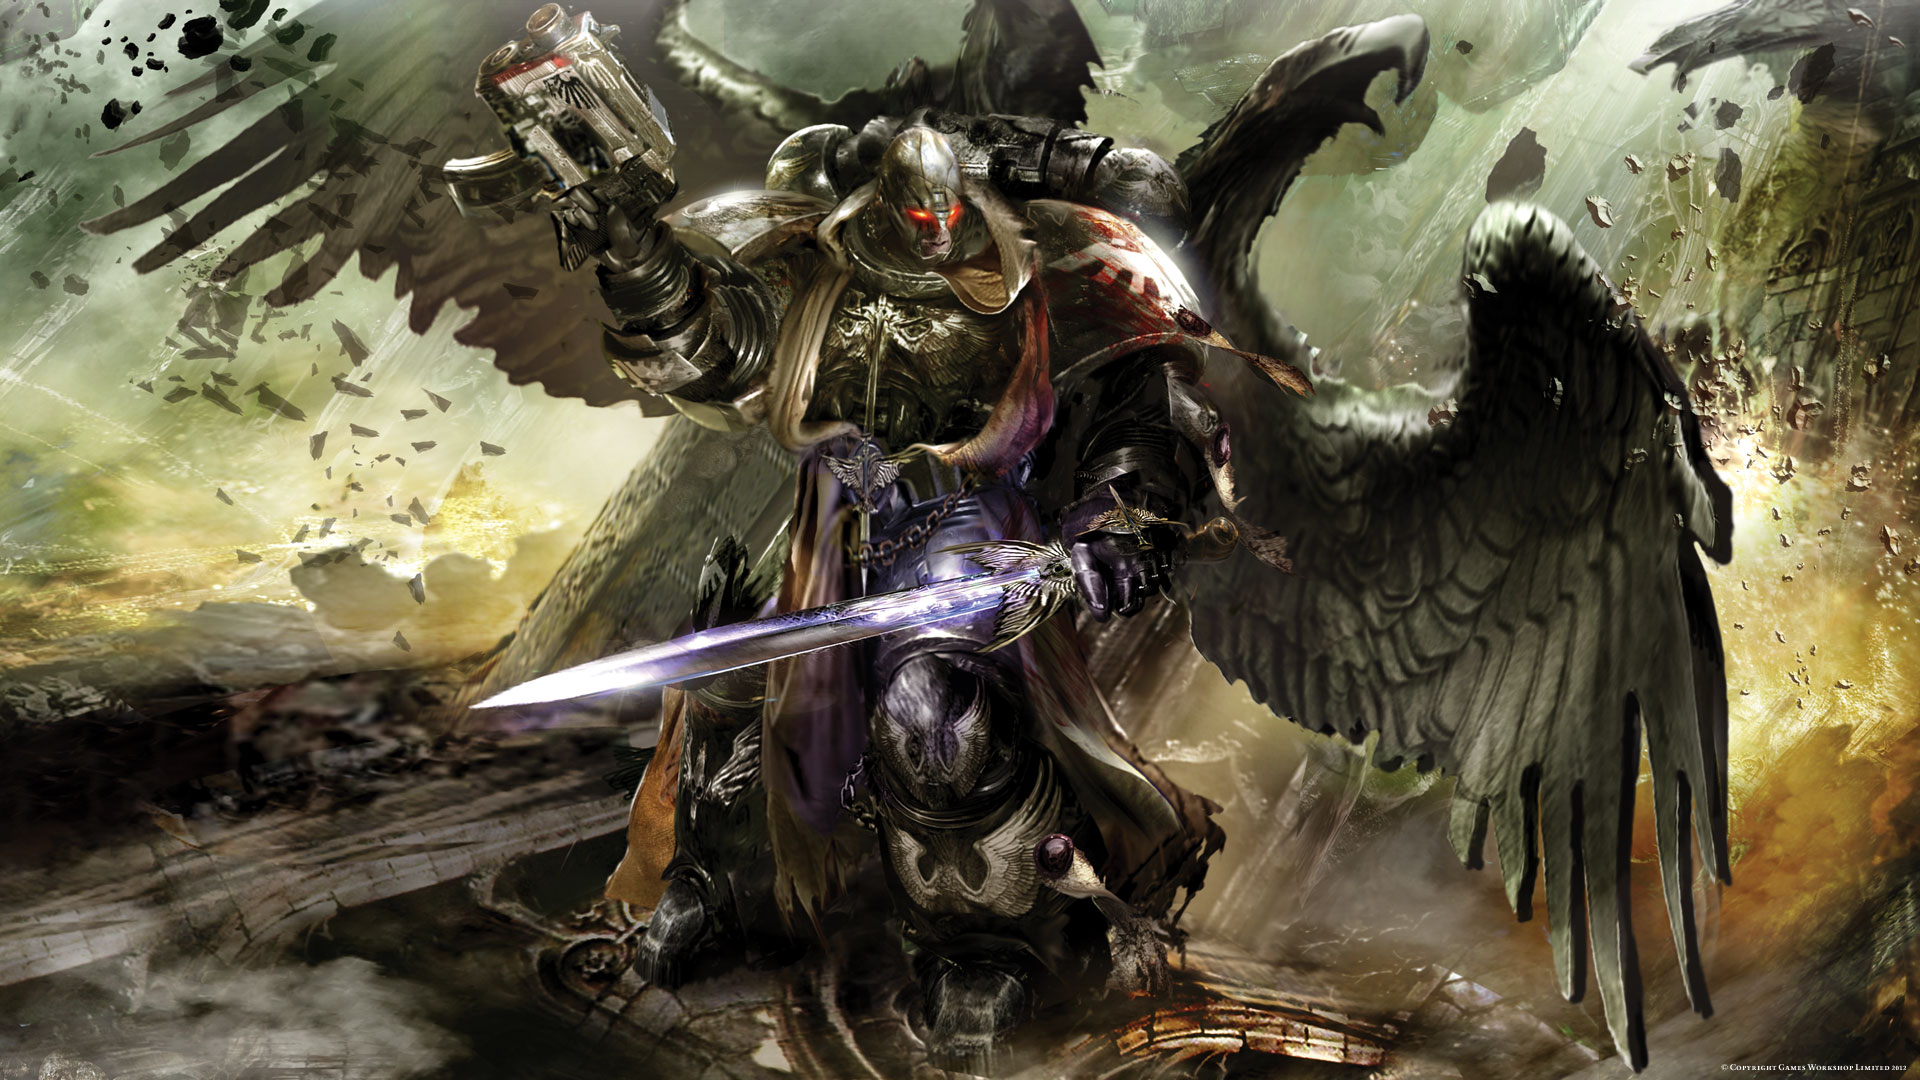 40k wallpapers  Album on Imgur  Warhammer dark angels Warhammer Dark  angels 40k